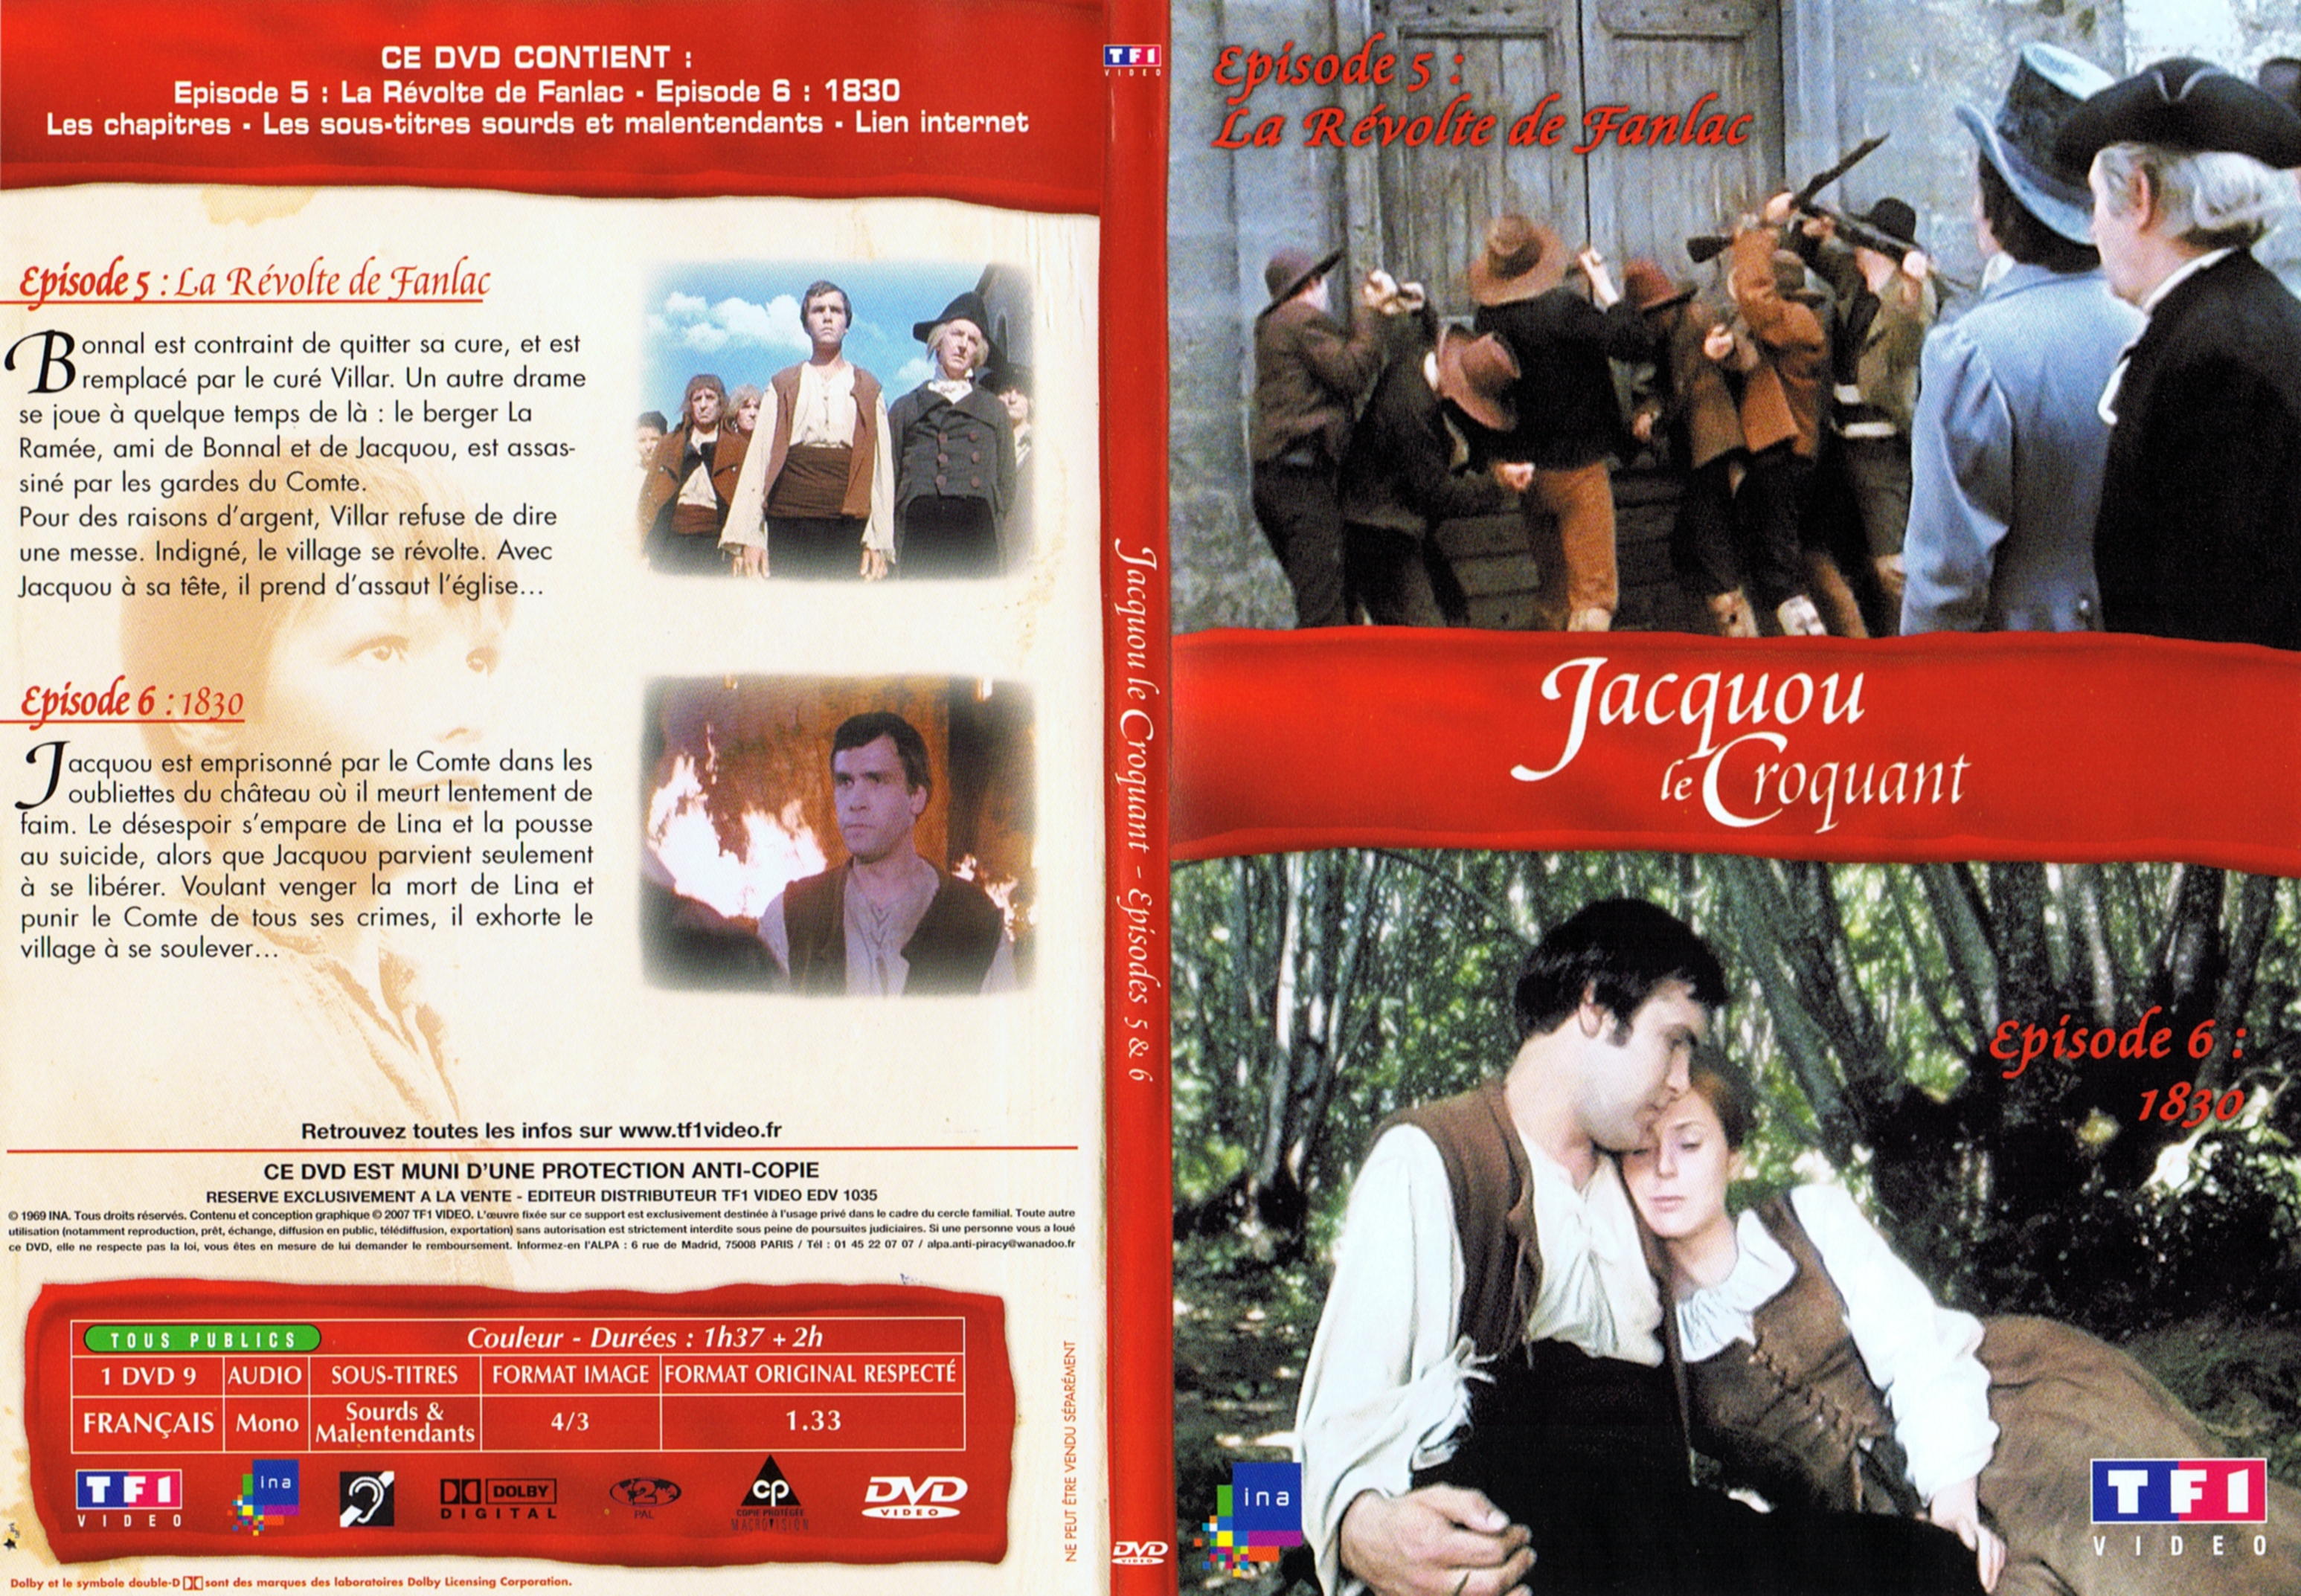 Jaquette DVD Jacquou le croquant DVD 3